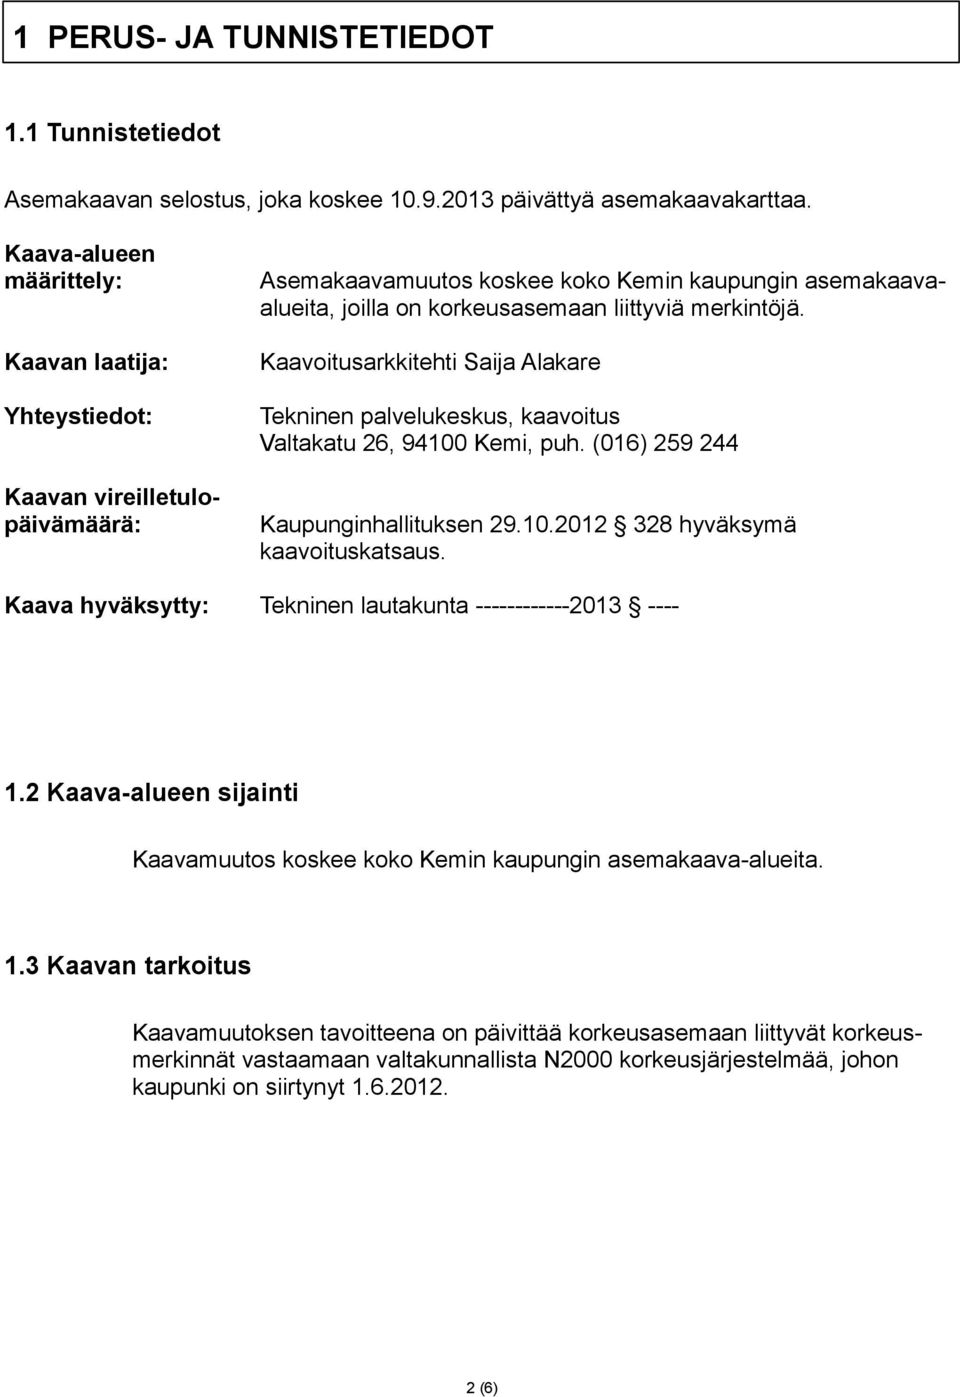 Kaavoitusarkkitehti Saija Alakare Tekninen palvelukeskus, kaavoitus Valtakatu 26, 94100 Kemi, puh. (016) 259 244 Kaupunginhallituksen 29.10.2012 328 hyväksymä kaavoituskatsaus.